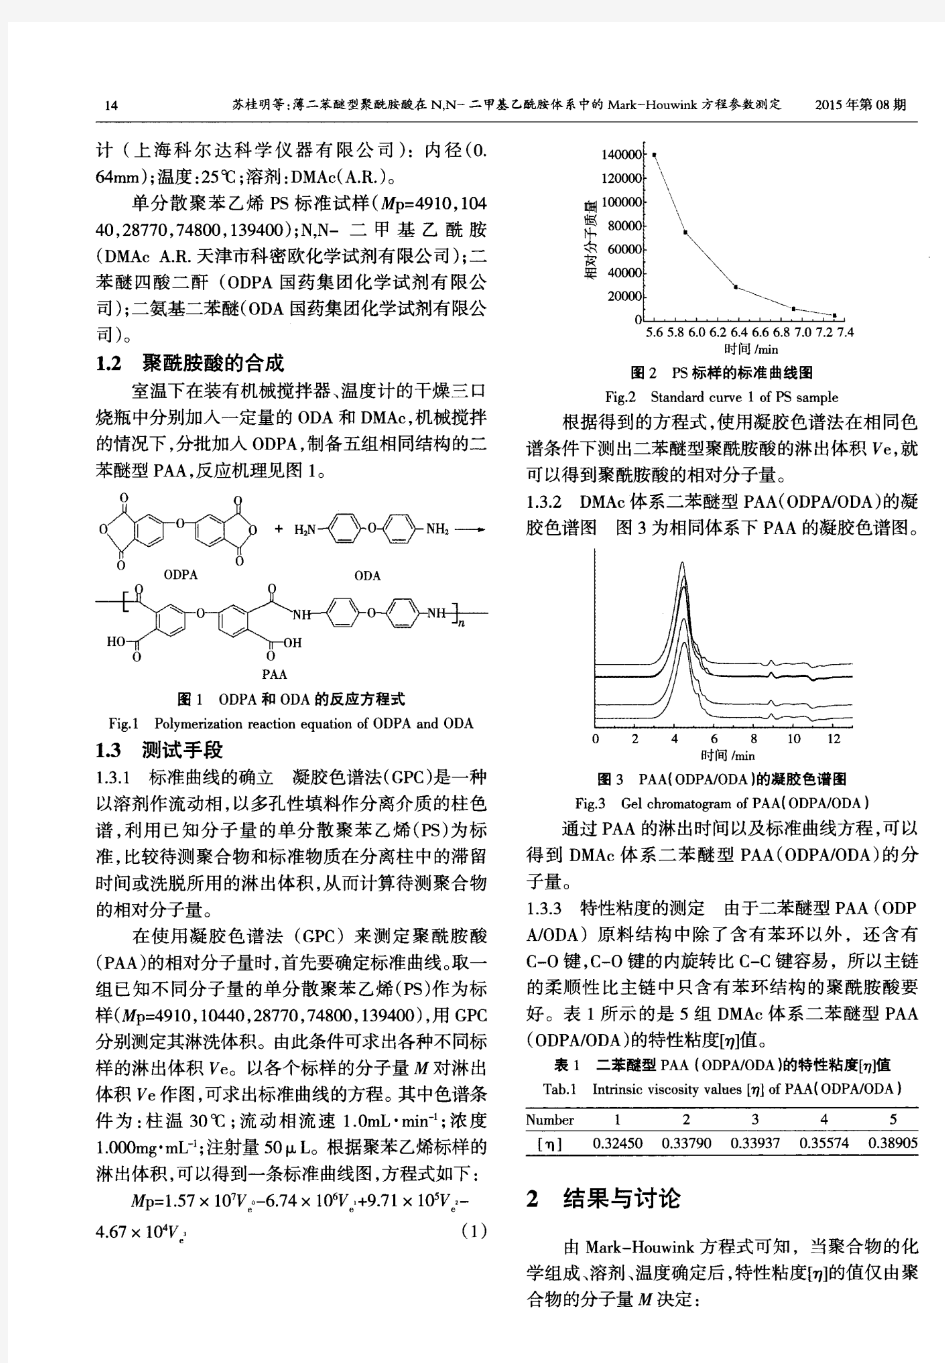 二苯醚型聚酰胺酸在N,N-二甲基乙酰胺体系中的Mark-Houwink方程参数测定